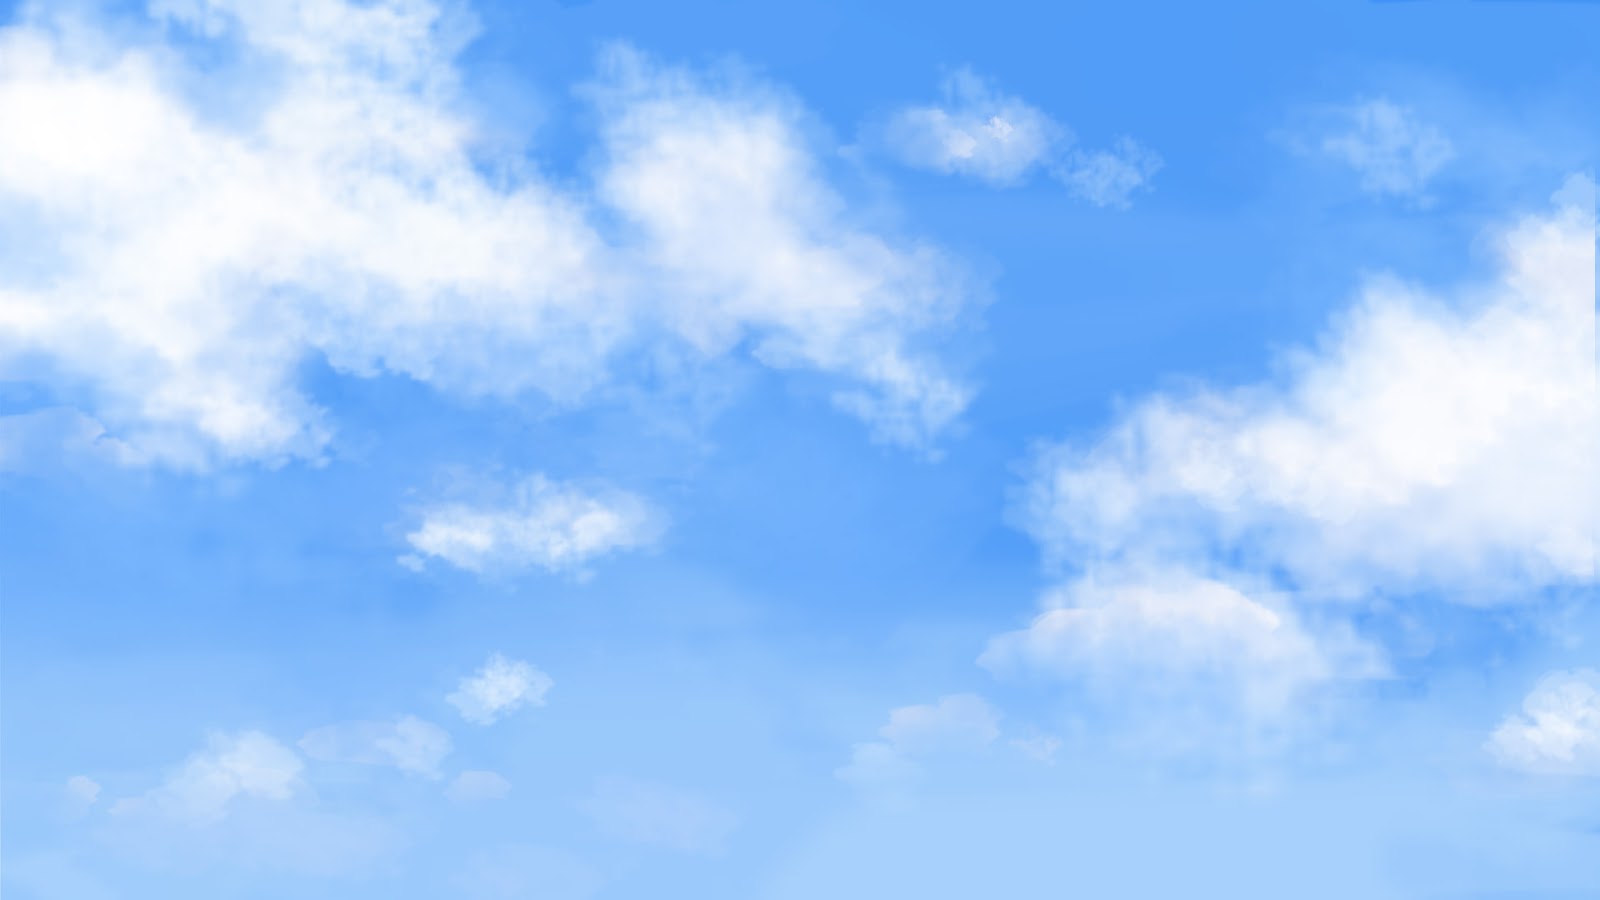 [50+] Moving Clouds Wallpaper - WallpaperSafari